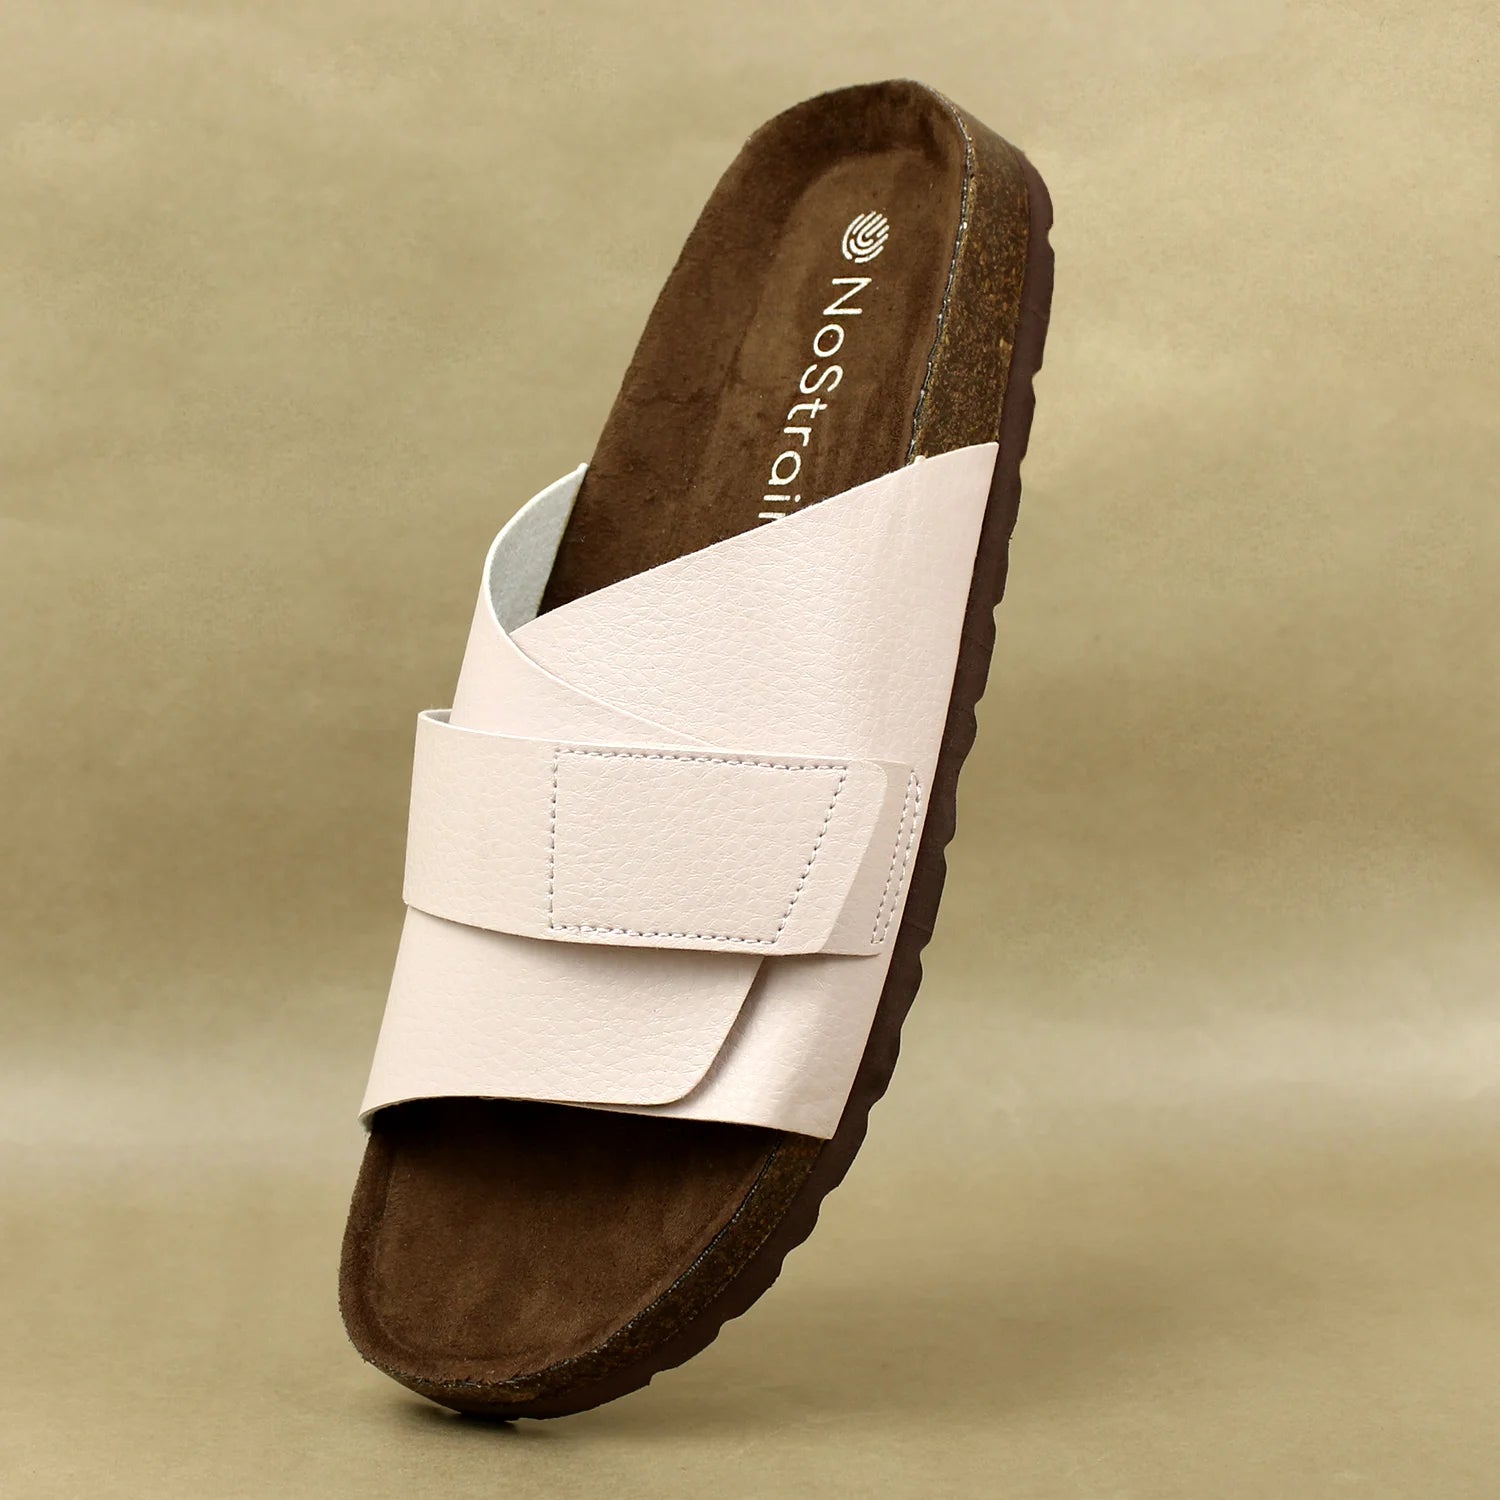 Premium rose vegan leather sandals for daily comfort